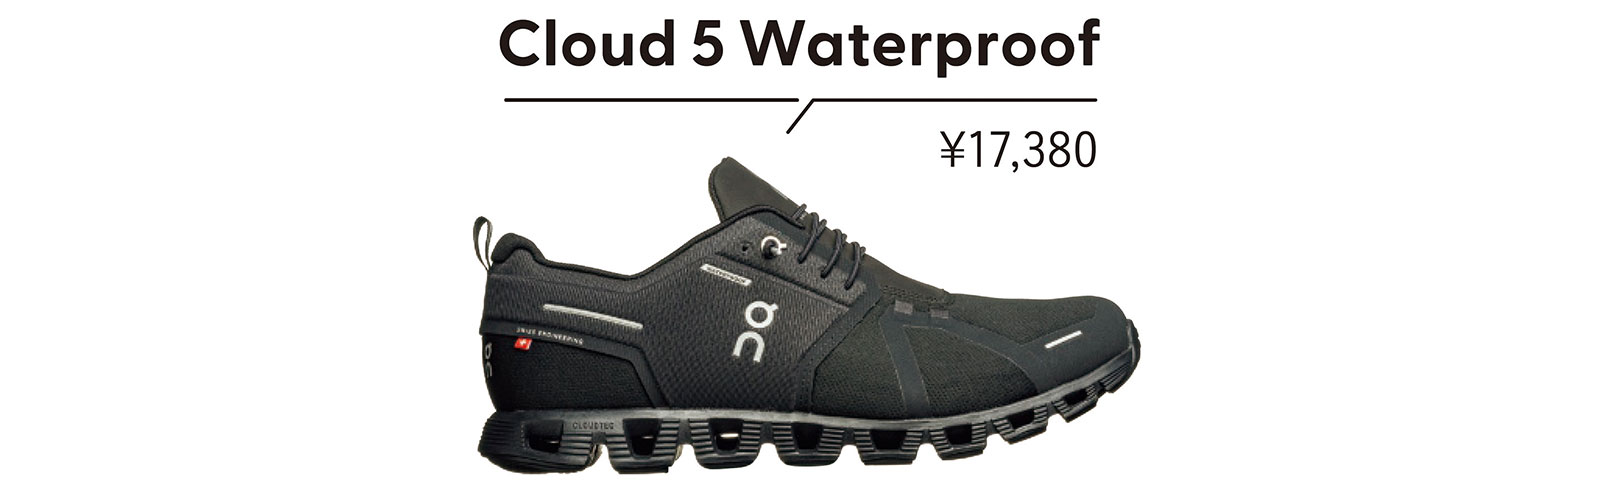 《Cloud 5 Waterproof》